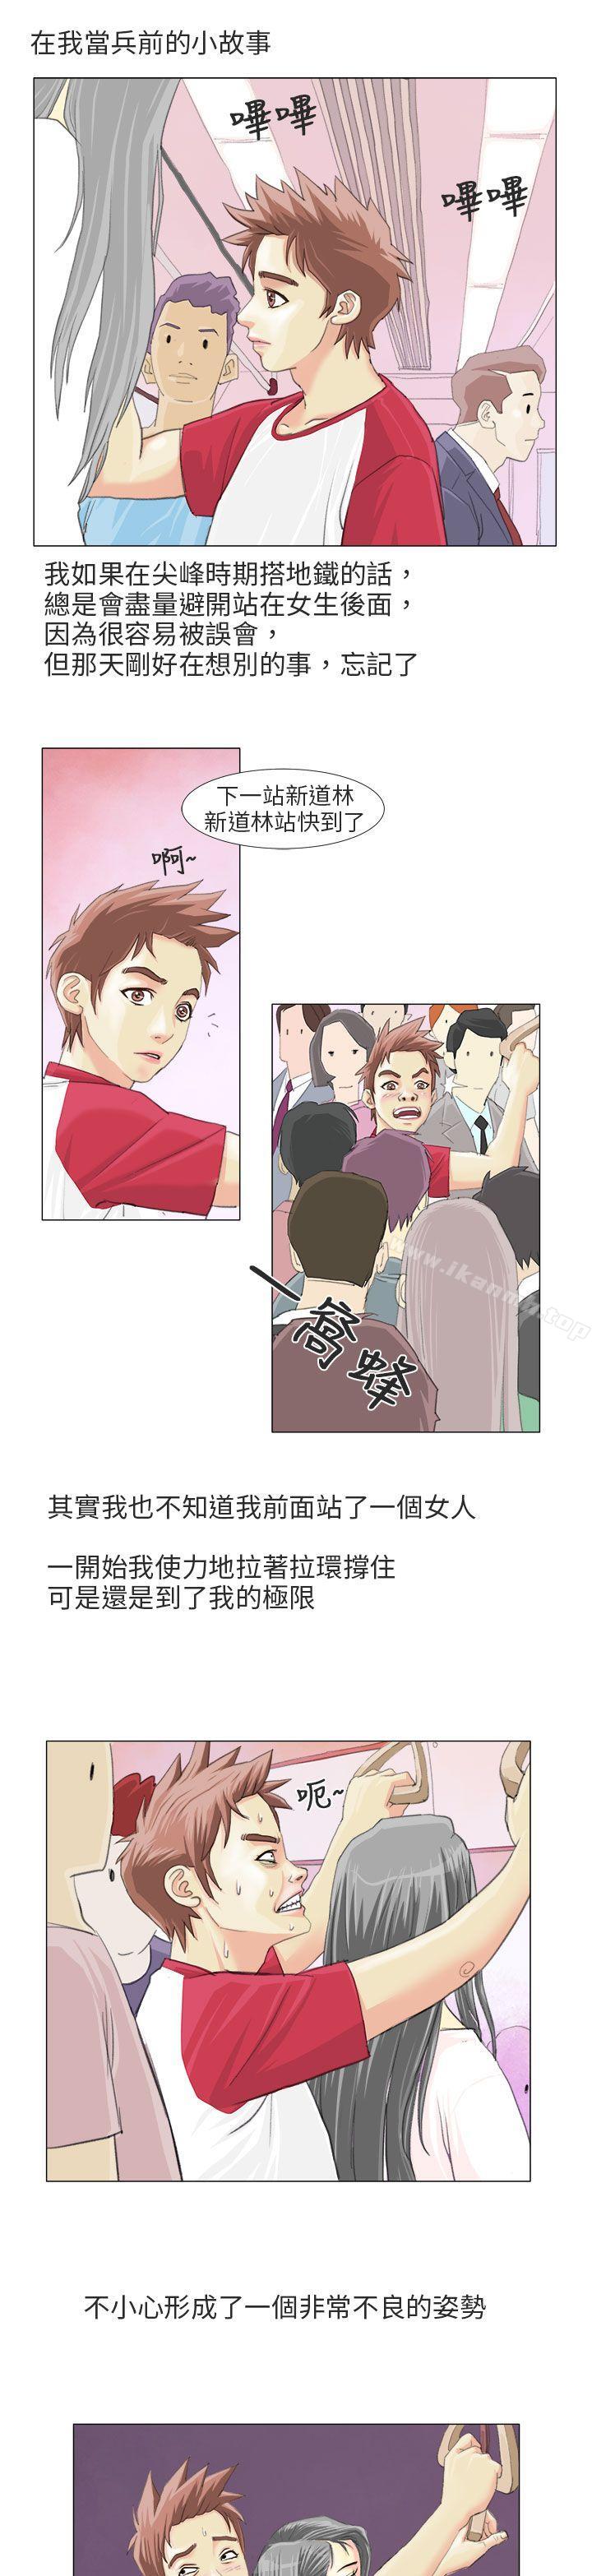 漫画韩国 秘密Story第二季   - 立即阅读 第二季 電車癡漢?(上)第2漫画图片